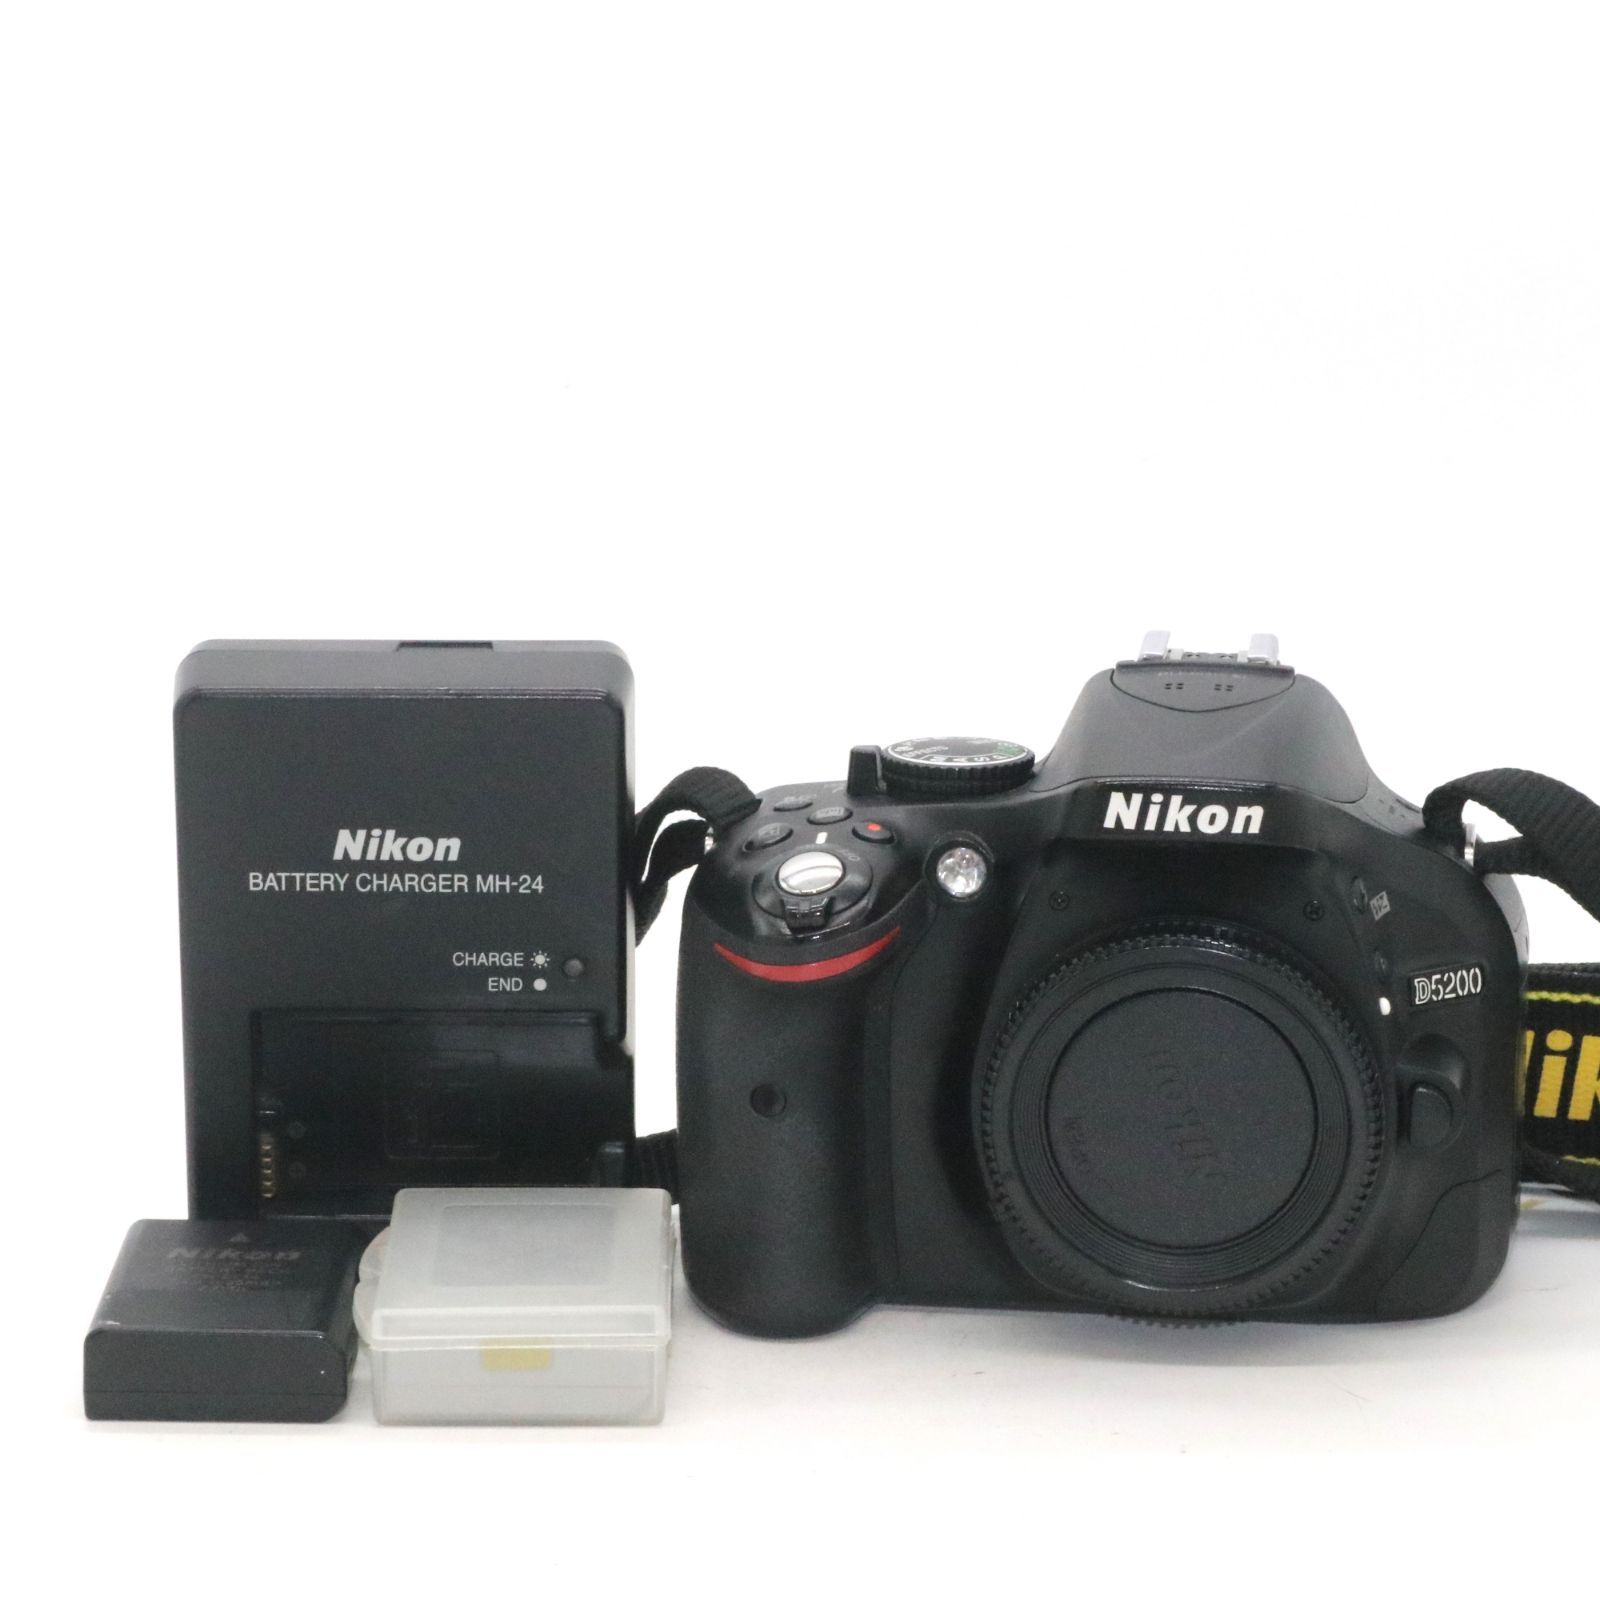 良品 予備バッテリー付き Nikon デジタル一眼レフカメラ D5200 ボディ